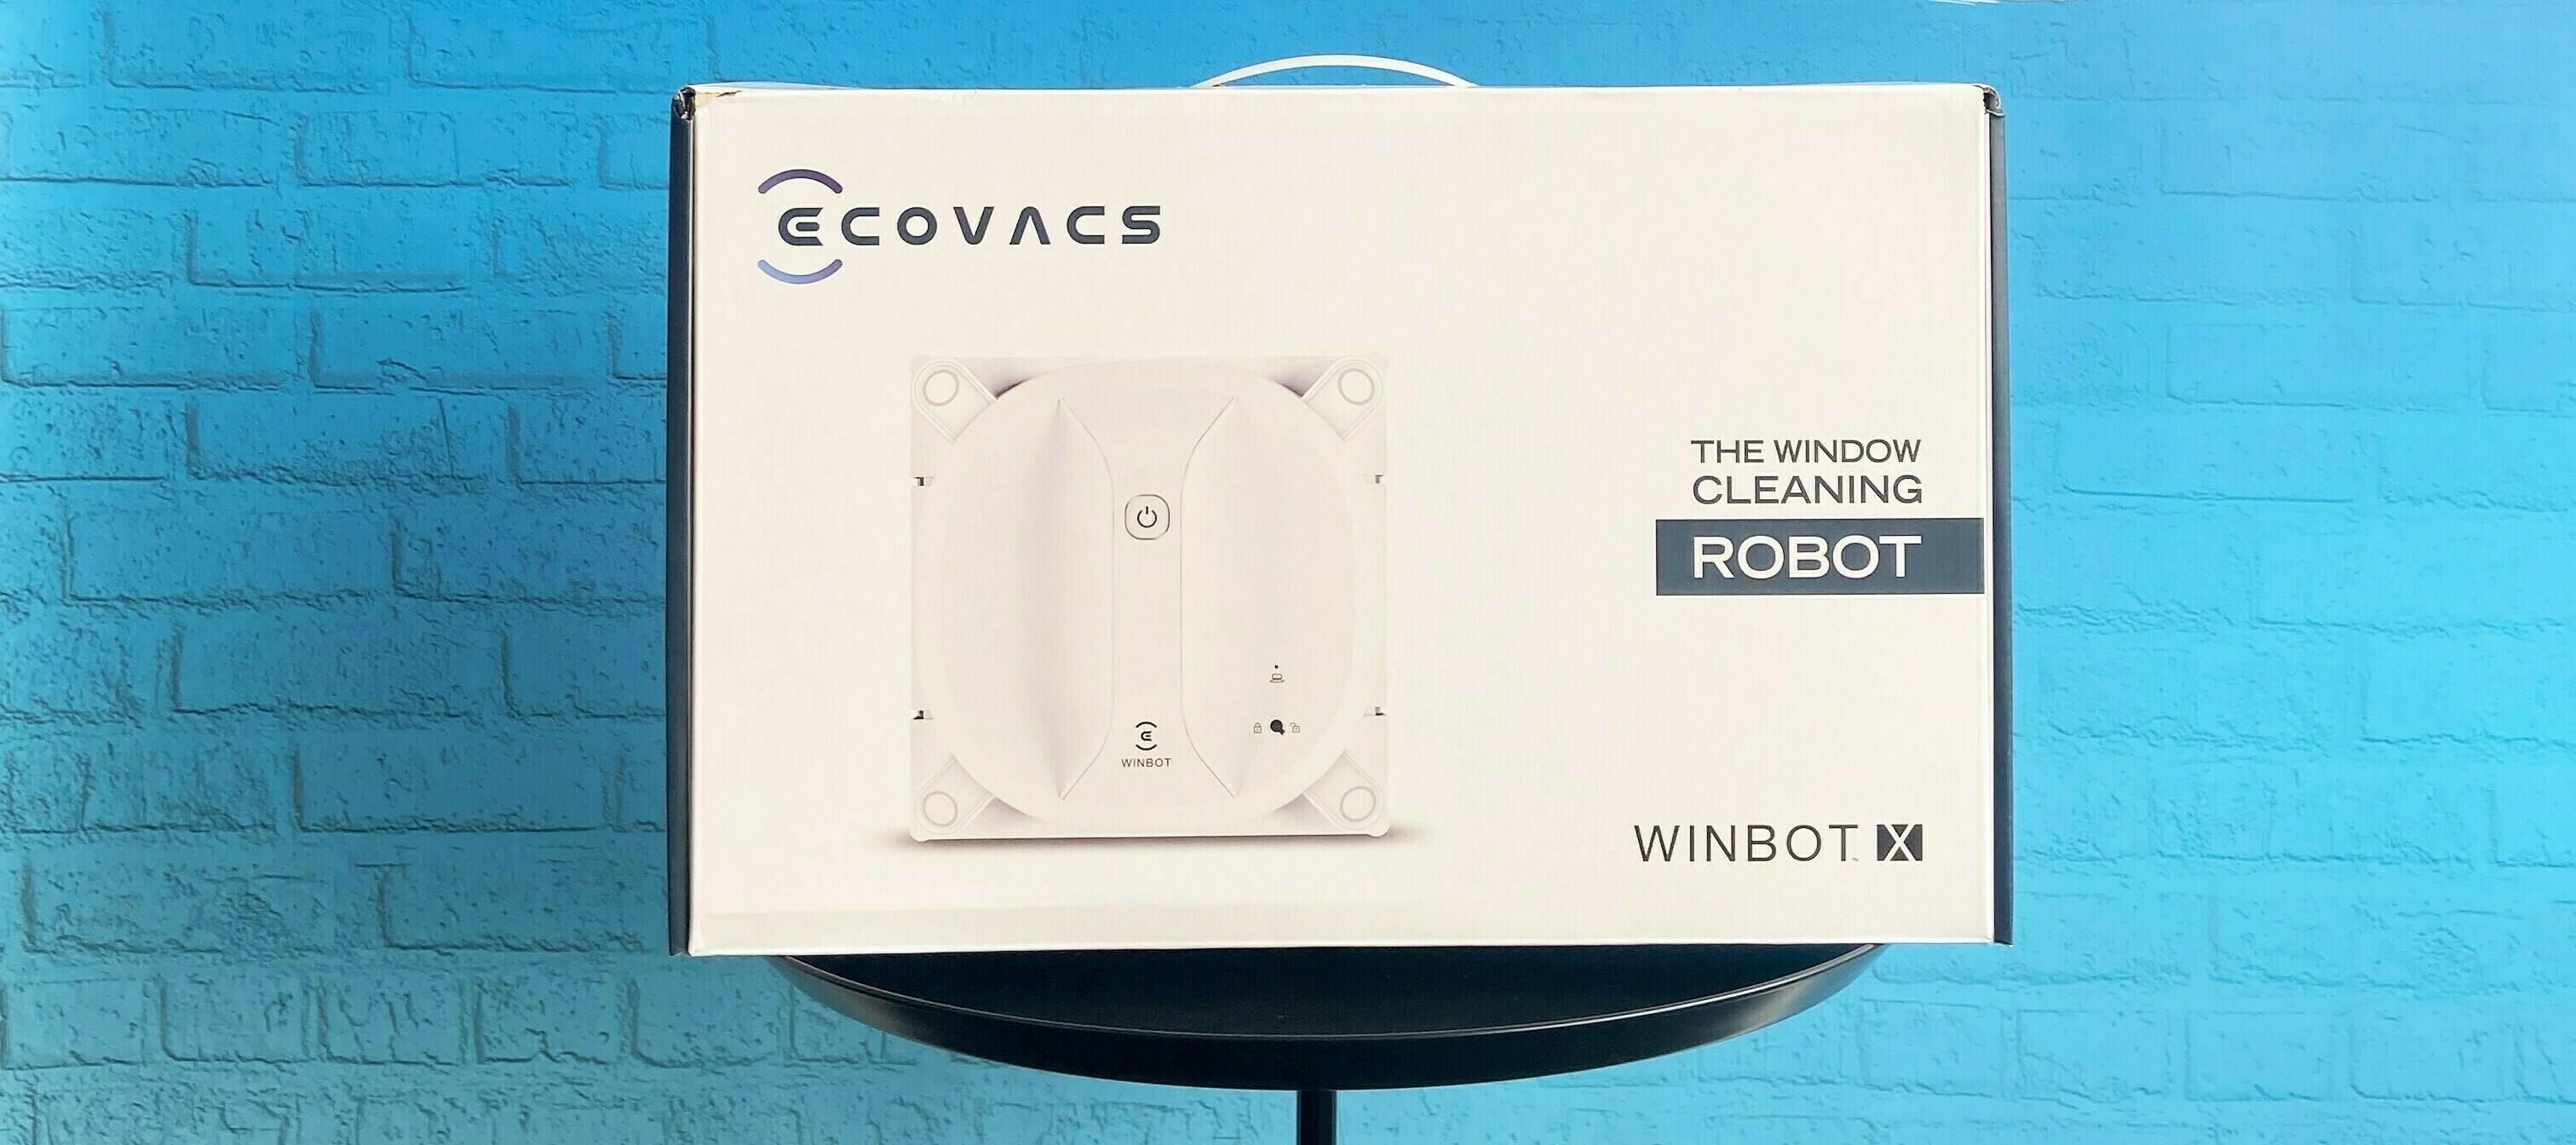 Auf die Plätze fertig geputzt - jetzt den Winbot X Ecovacs Fensterreinigungsroboter testen